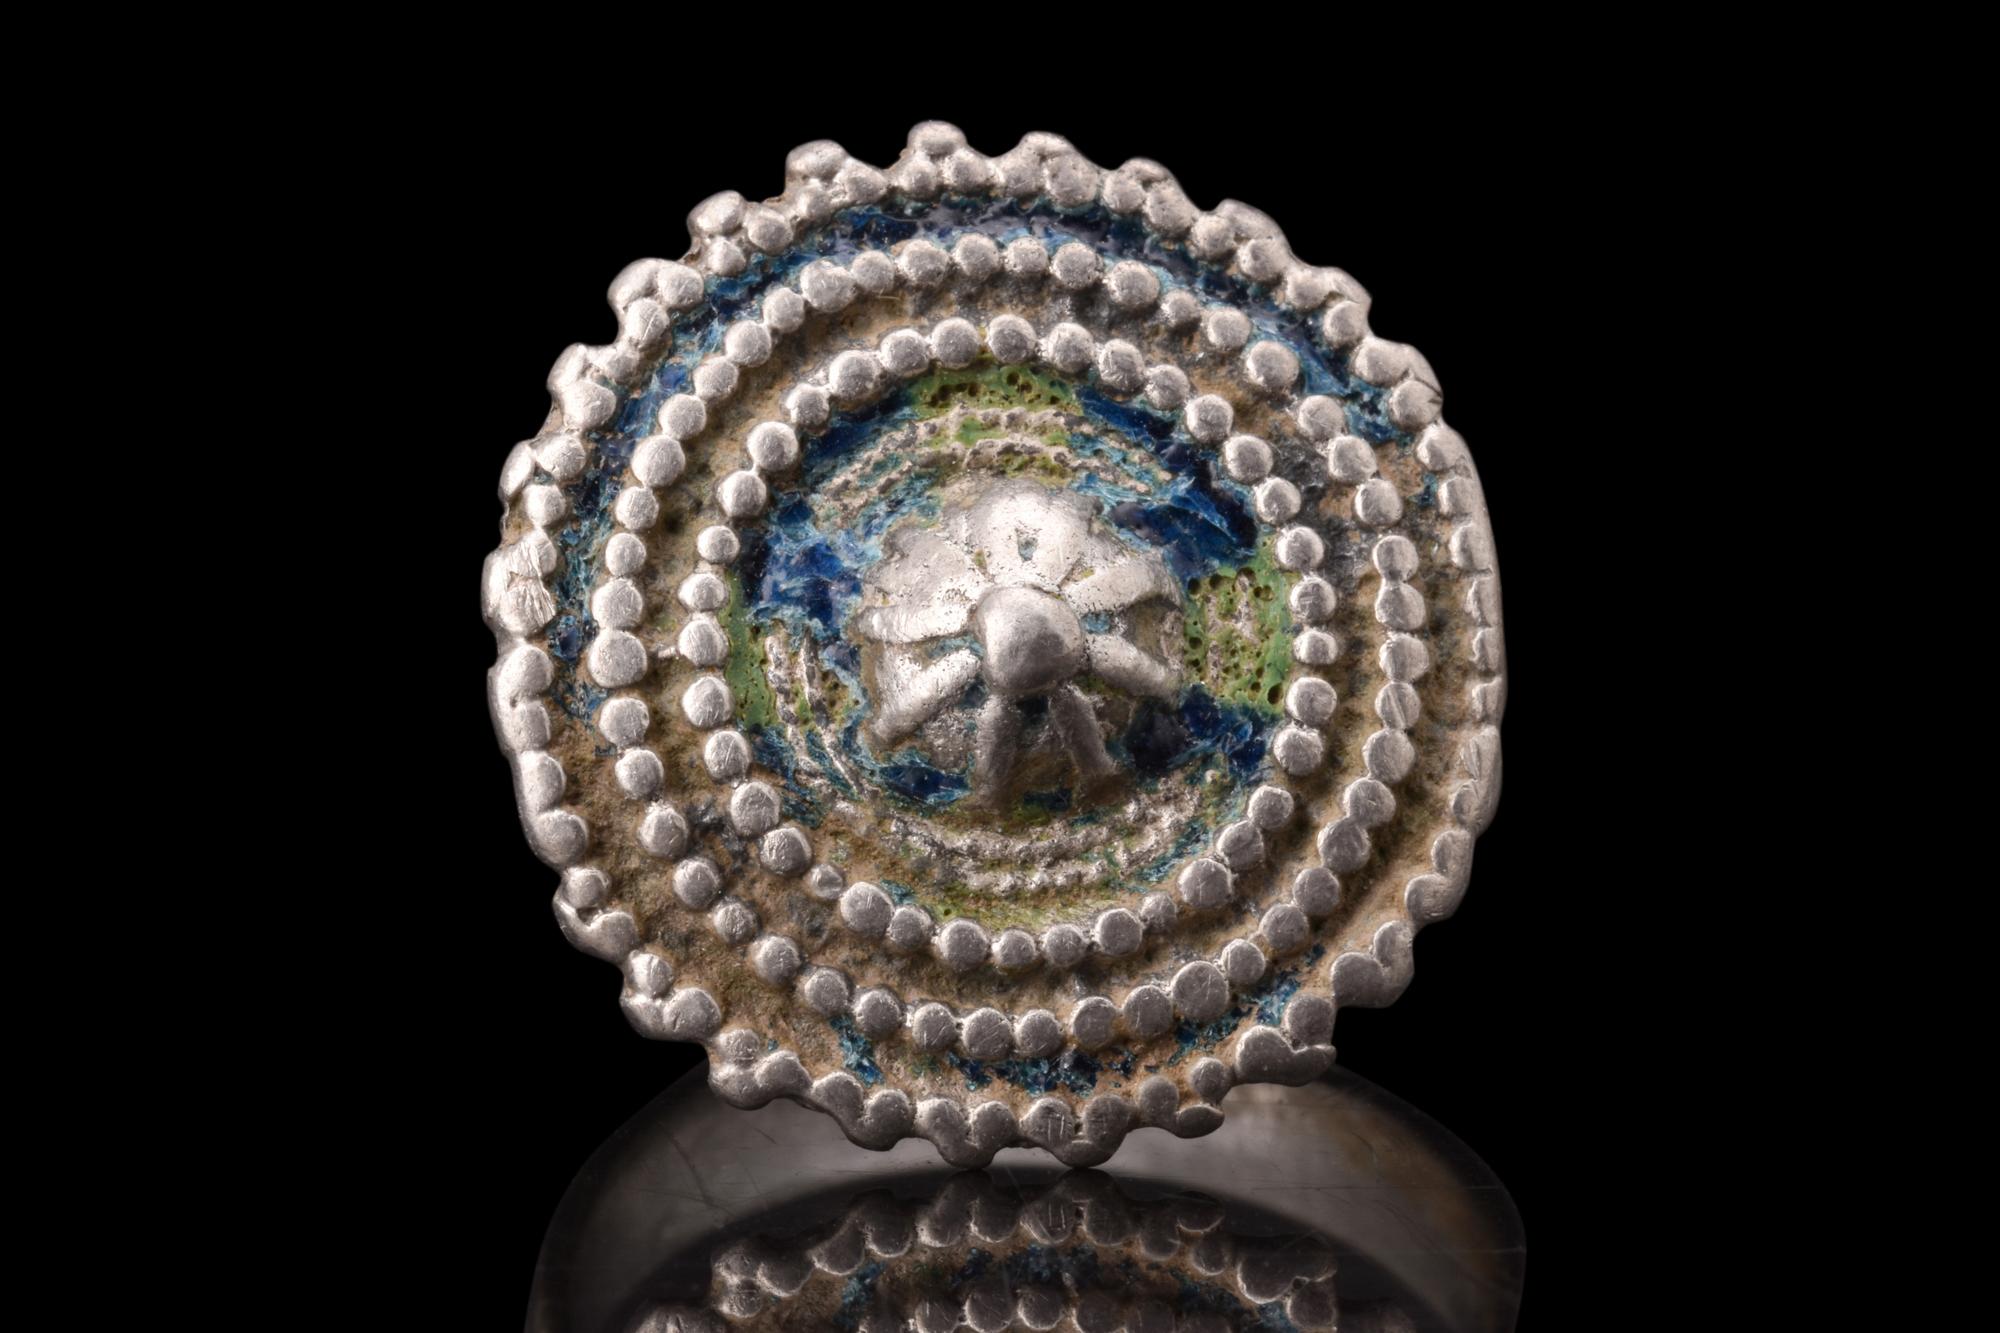 Ein byzantinischer Silberring, der sich durch seine große, granulierte Schildlünette auszeichnet, die das künstlerische Können und die kulturelle Bedeutung des byzantinischen Reiches widerspiegelt. Der Ring verfügt über einen runden Ring mit einem